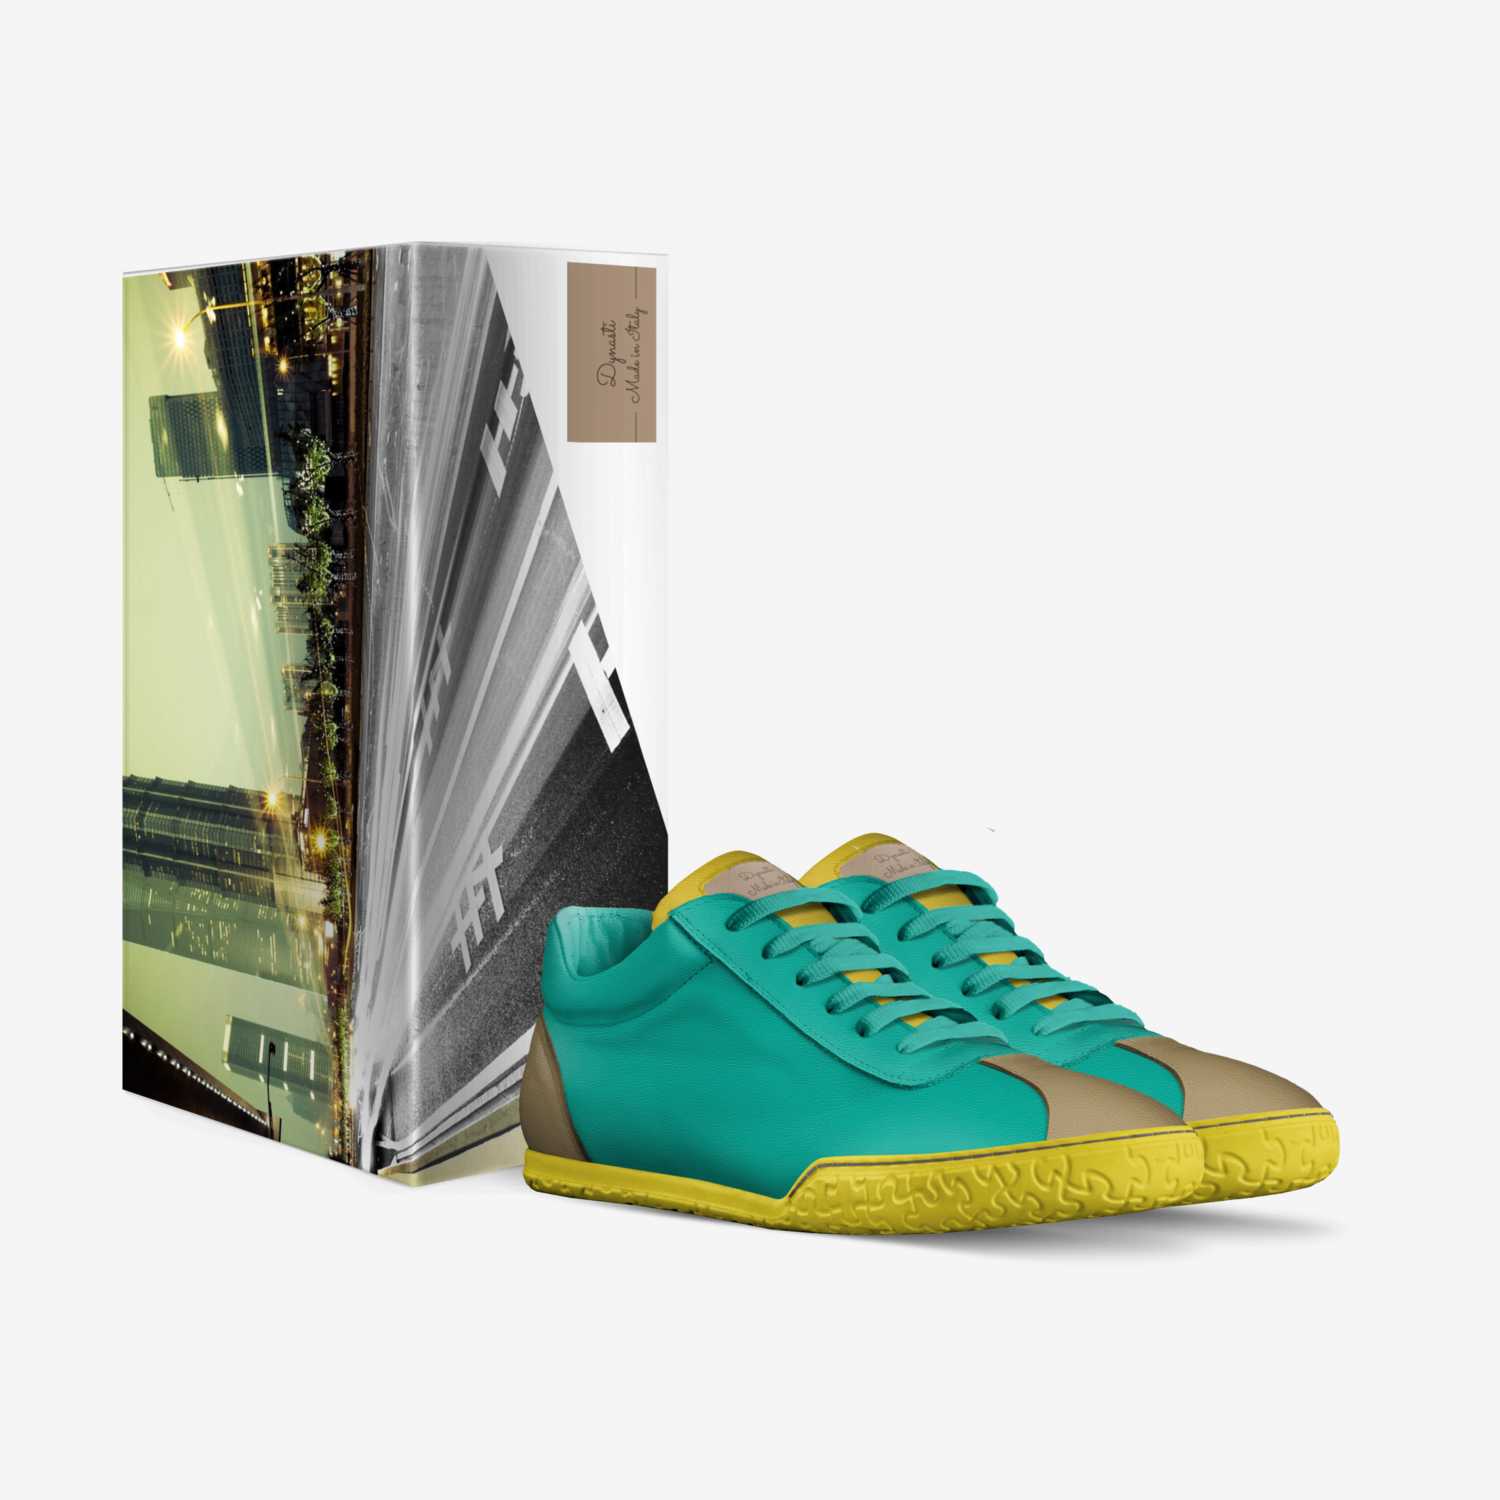 Dynasti custom made in Italy shoes by Octavia Mcknight | Box view